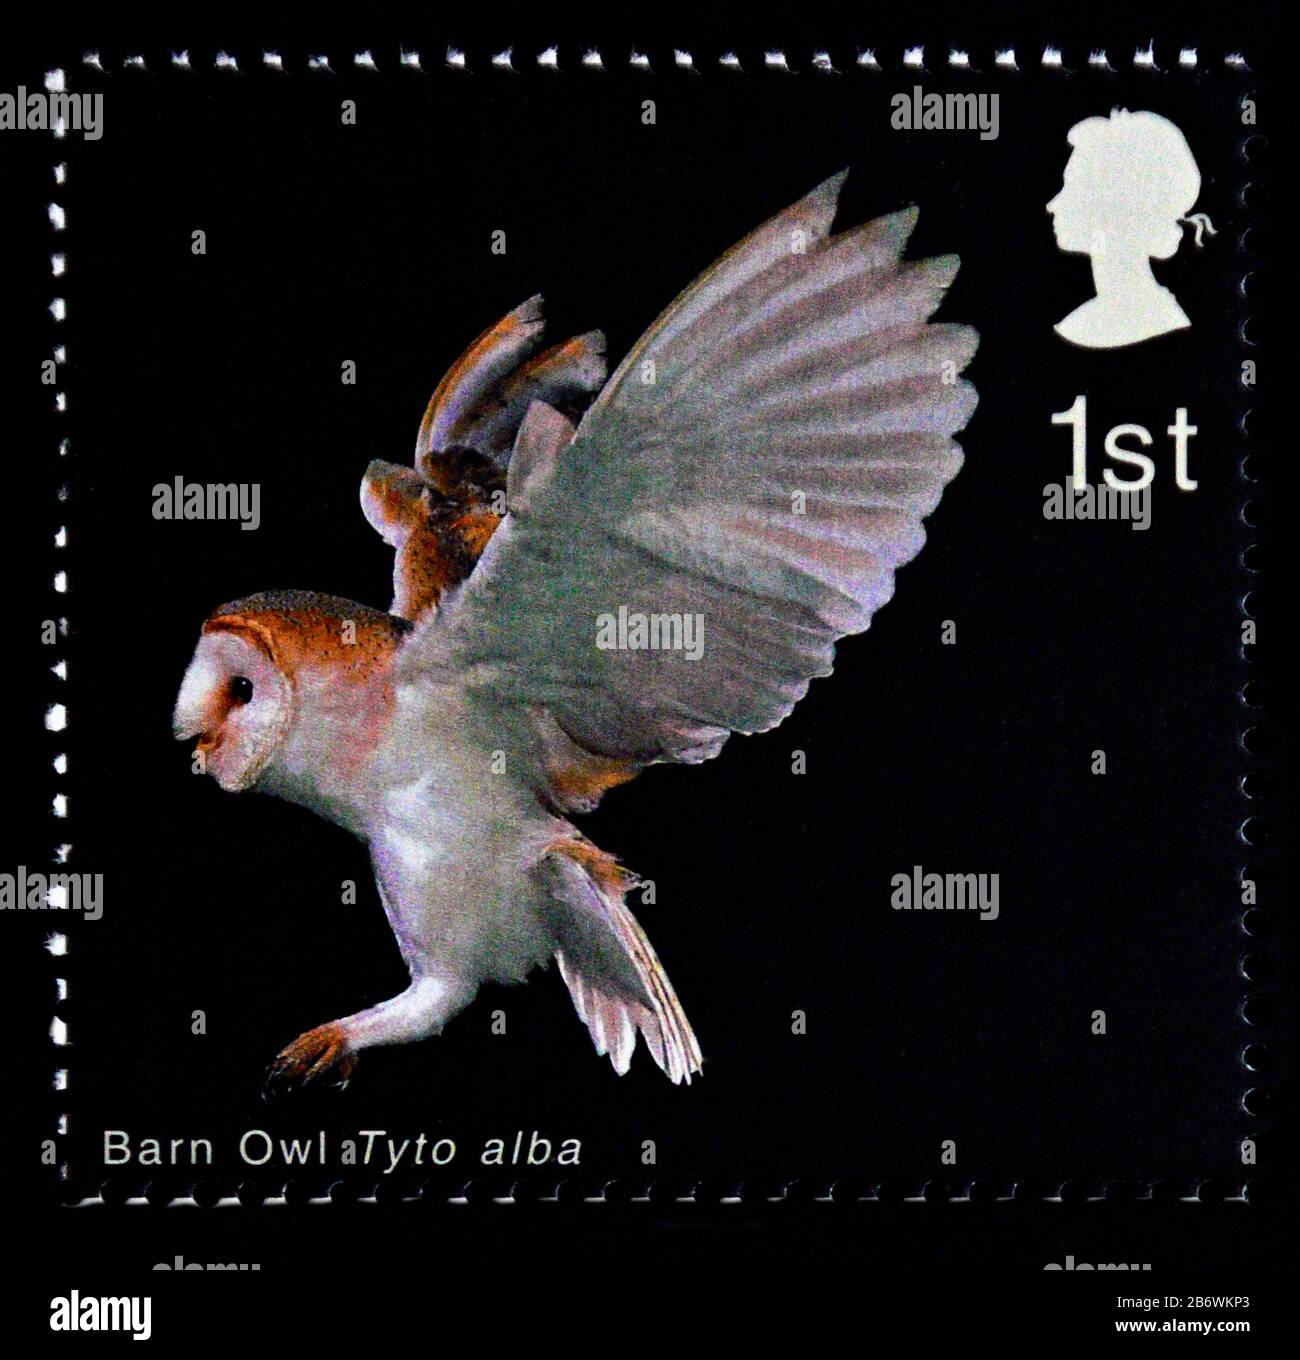 Postage stamp. Great Britain. Queen Elizabeth II. Birds of Prey. Barn Owl. Barn Owl Landing. 1st. 2003. Stock Photo